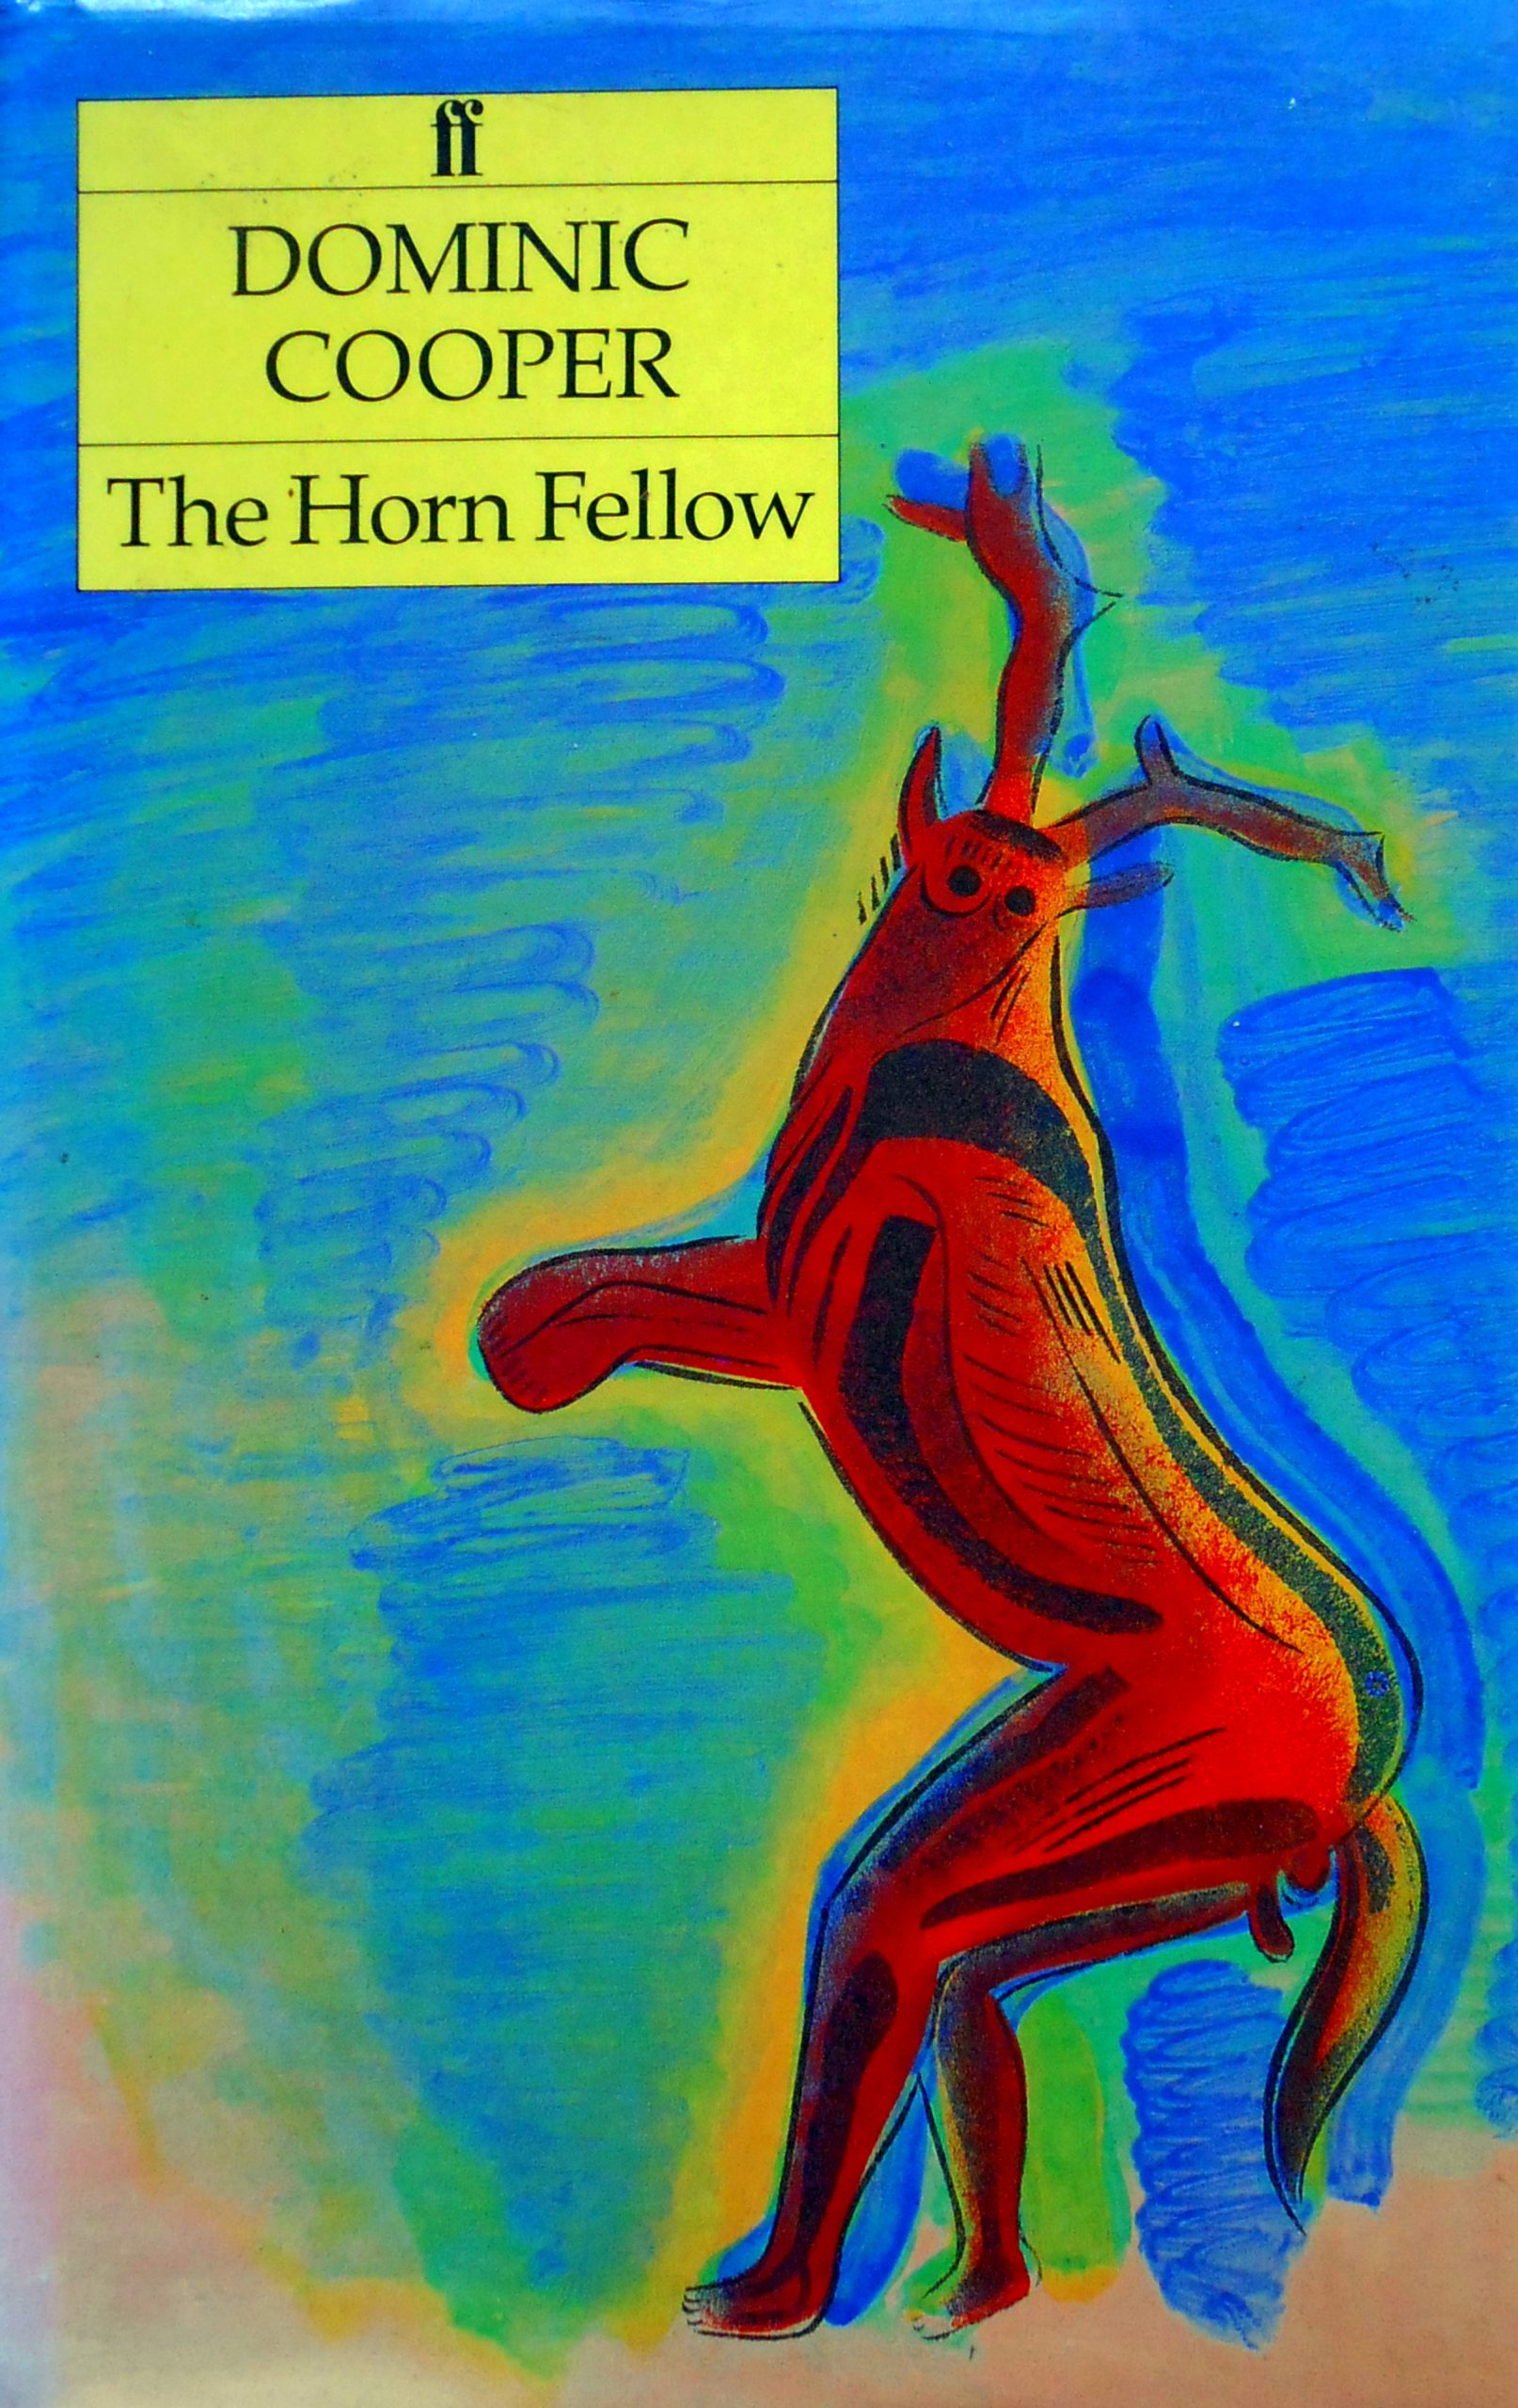 The Horn Fellow